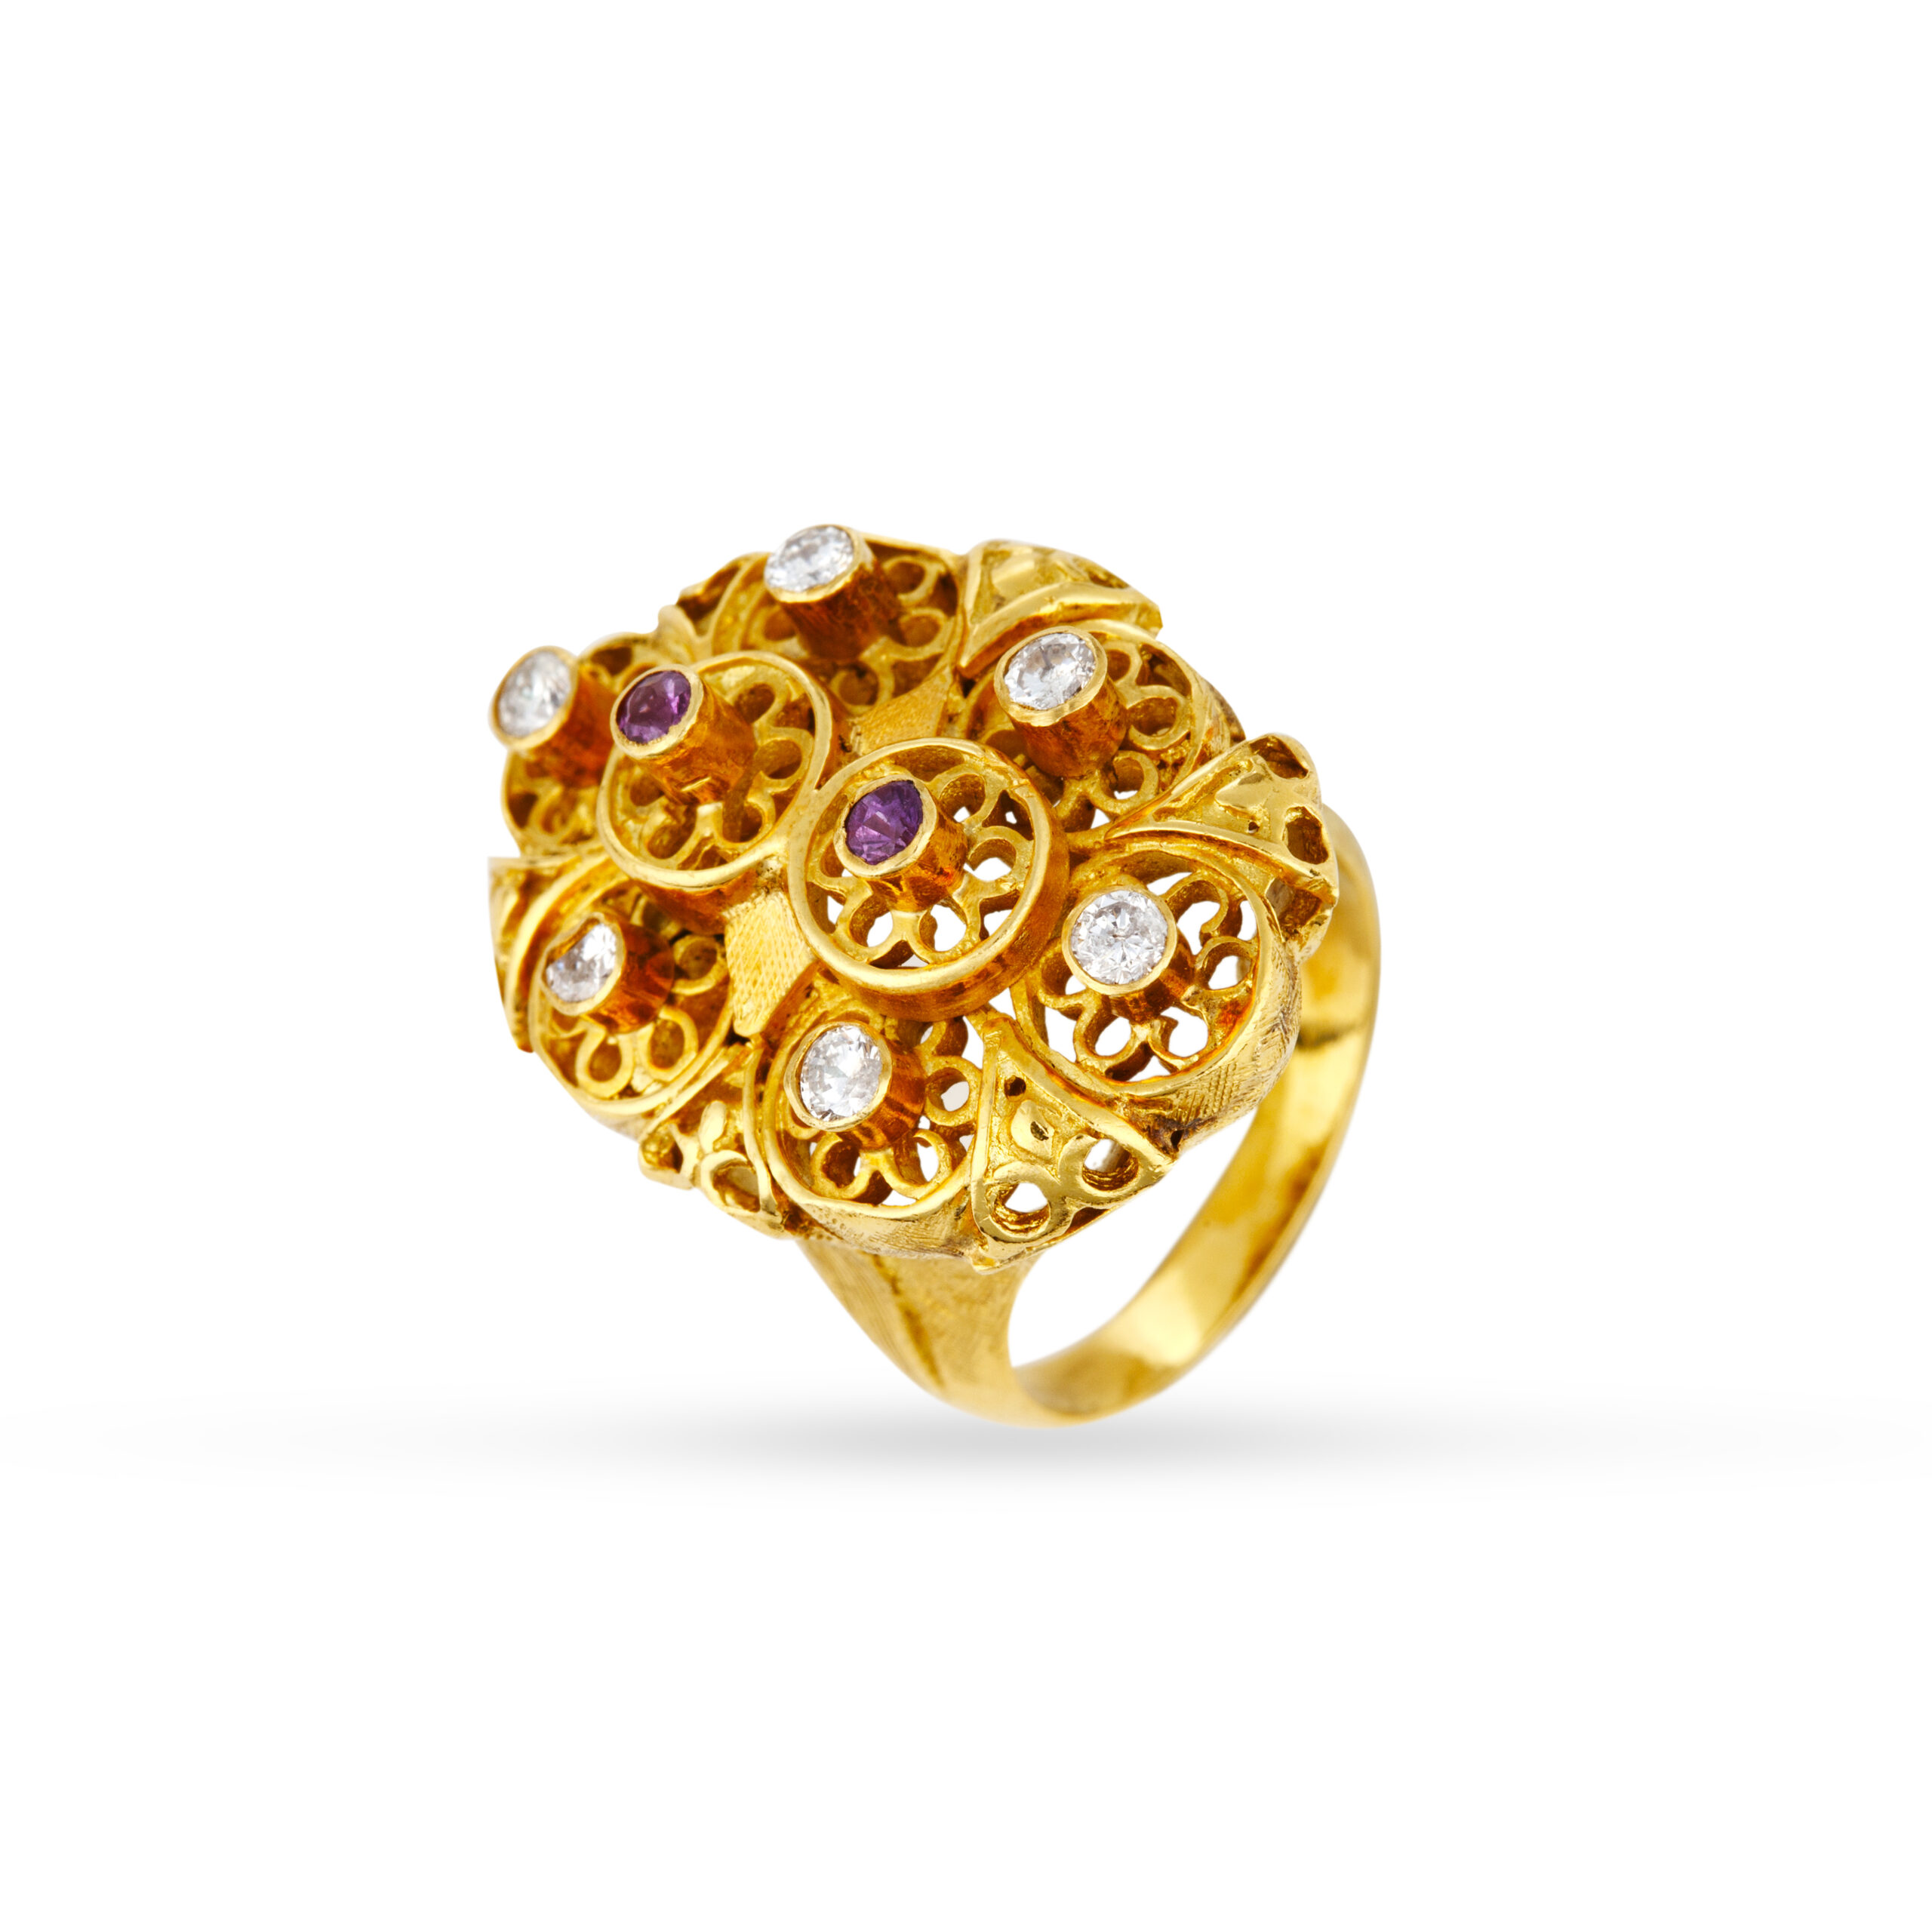 One-of-a-kind εντυπωσιακό χειροποίητο δαχτυλίδι σε κίτρινο χρυσό Κ18